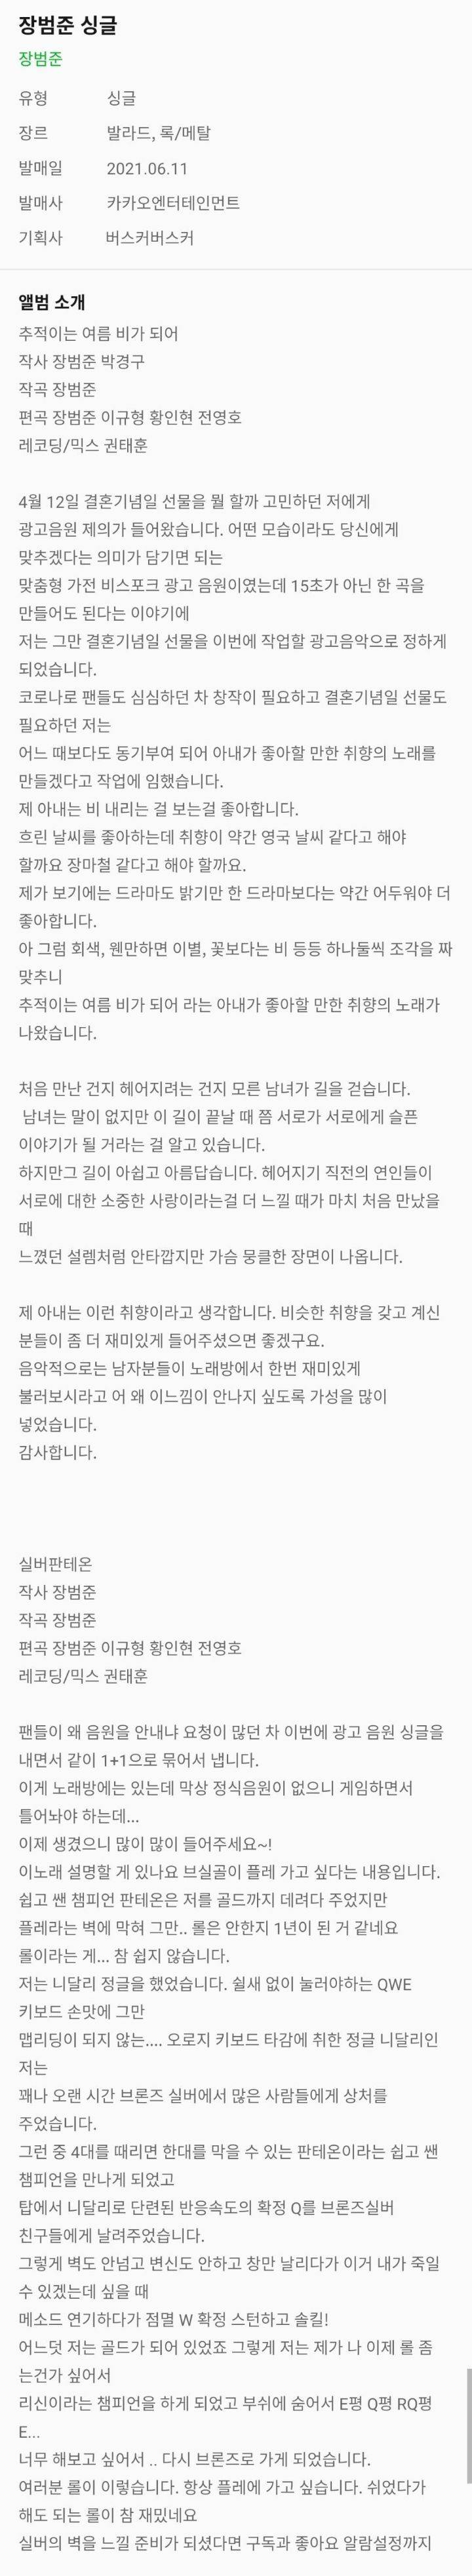 레전드인 장범준 새싱글 앨범소개란...(feat. 실버판테온) | 인스티즈